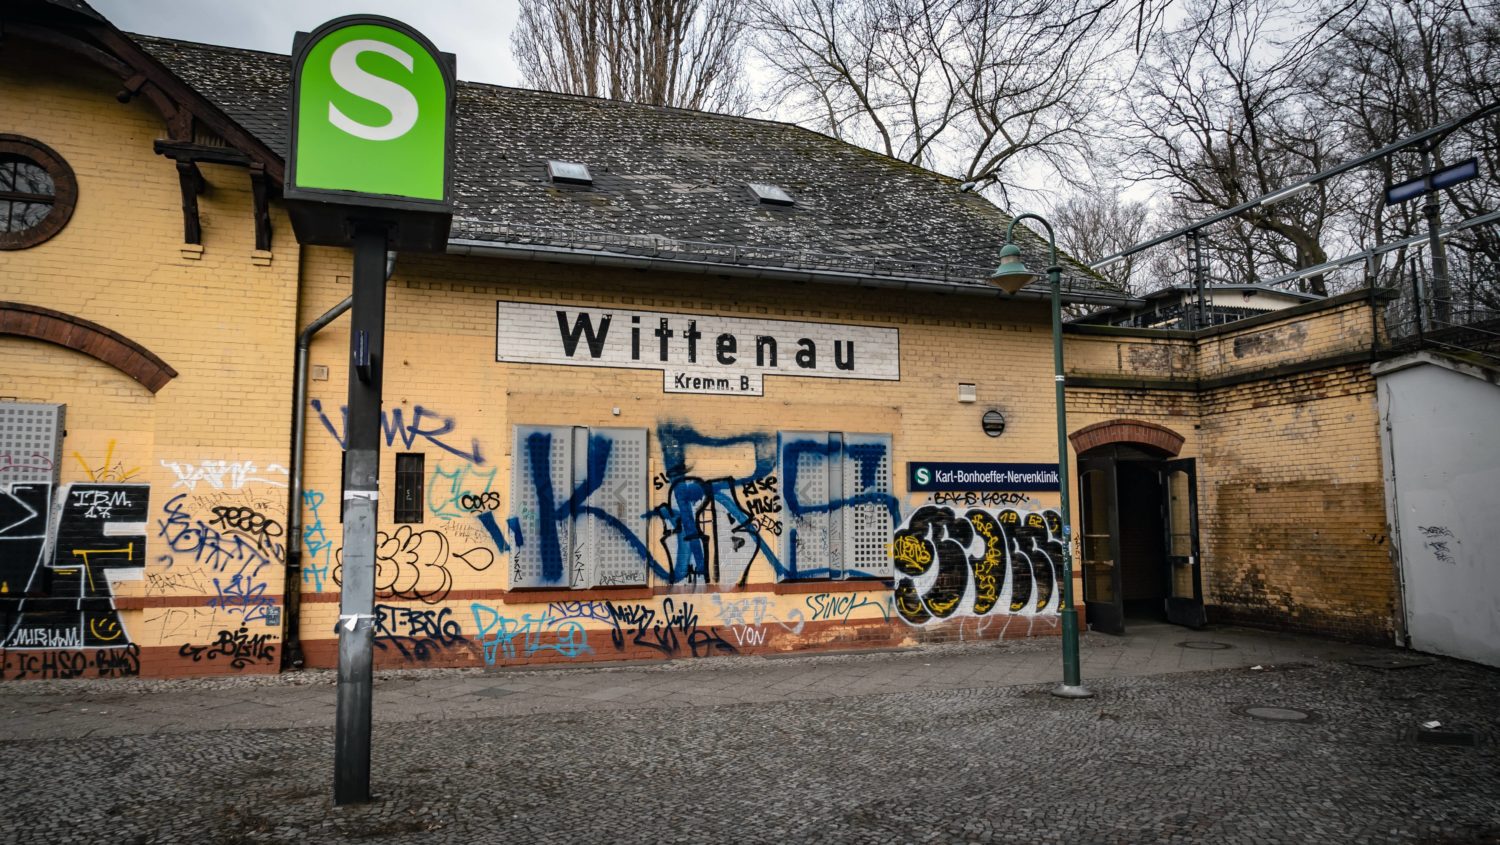 Umstieg in die S-Bahn: An der Karl-Bonhoeffer-Nervenklinik gibt es viele Hinweise darauf, dass die Station einst Wittenau hieß. Foto: Imago Images/Jürgen Ritter